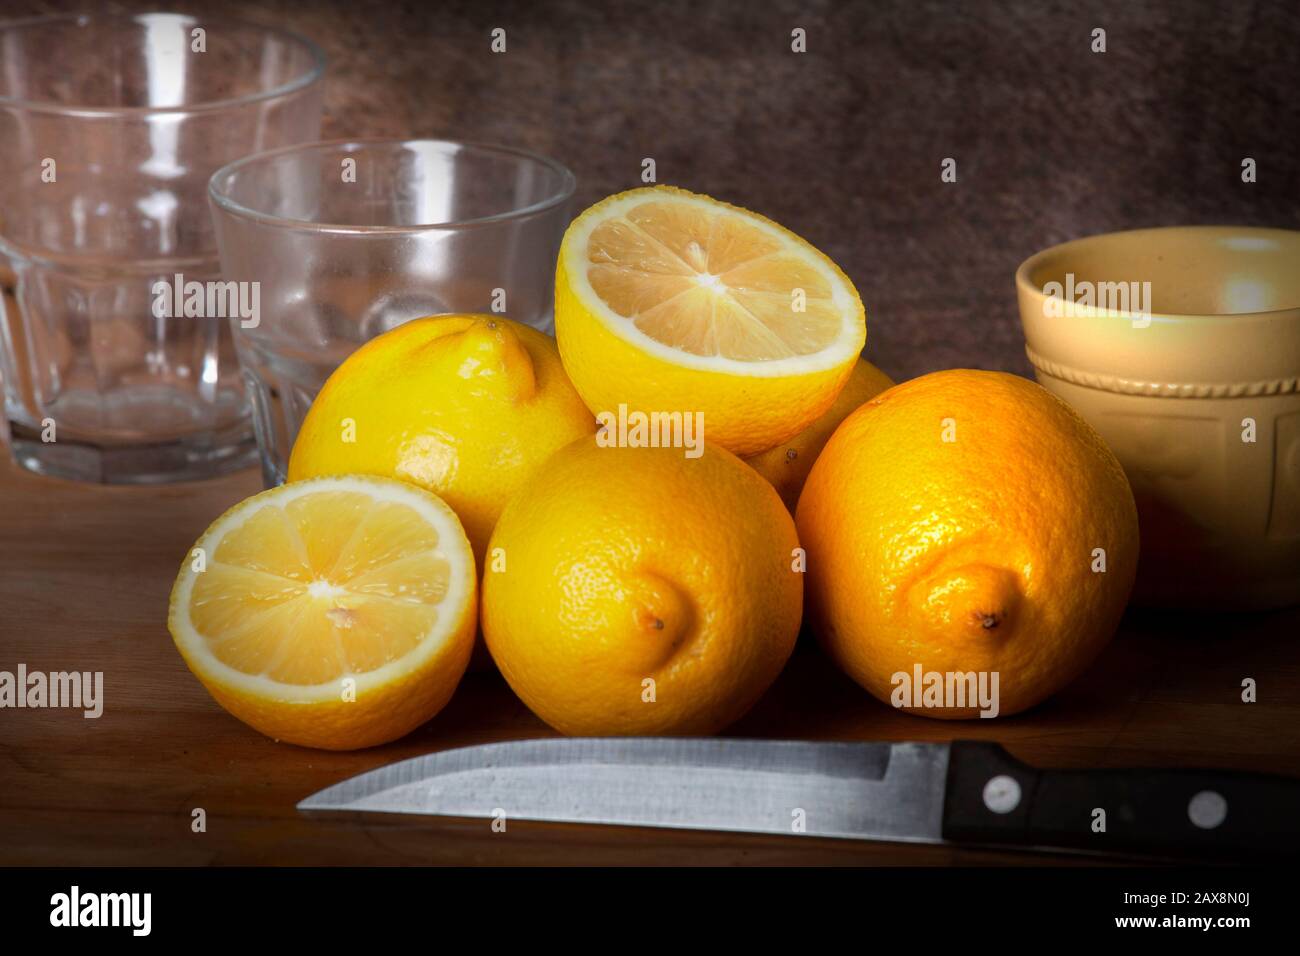 vida de estil de limón en deskcon muchos cambios en la foto, como diferentes objetos y diferentes luces, todo el estudio tiro Foto de stock